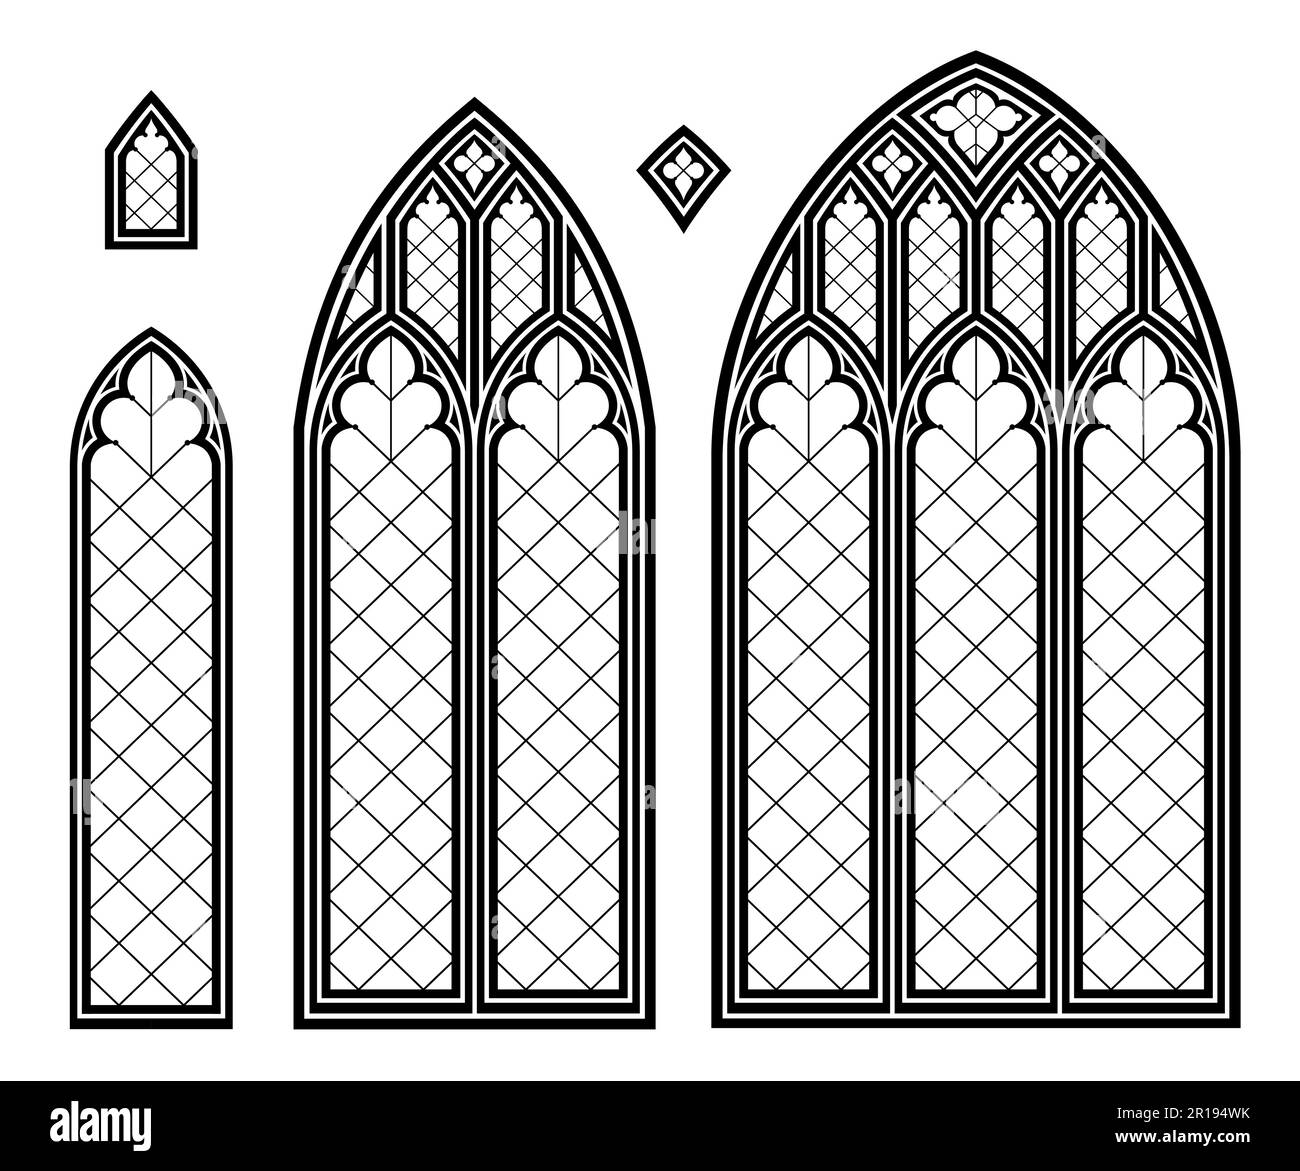 Mittelalterliche gotische Buntglaskathedrale mit Fenstern Stock Vektor